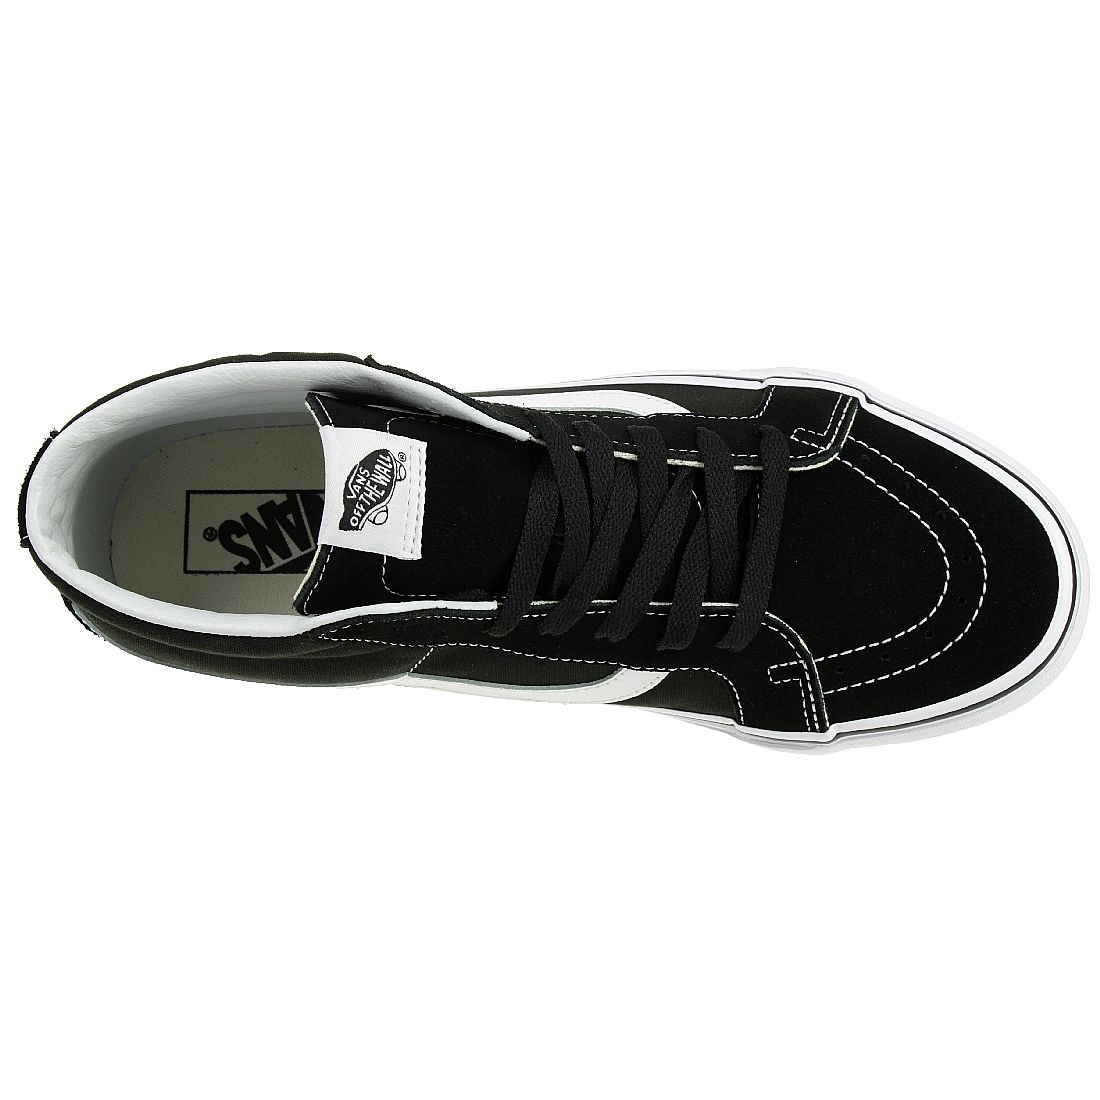 VANS Sk8-Mid Reissue Unisex-Erwachsene Sneaker VN0A391F6BT1 black/white